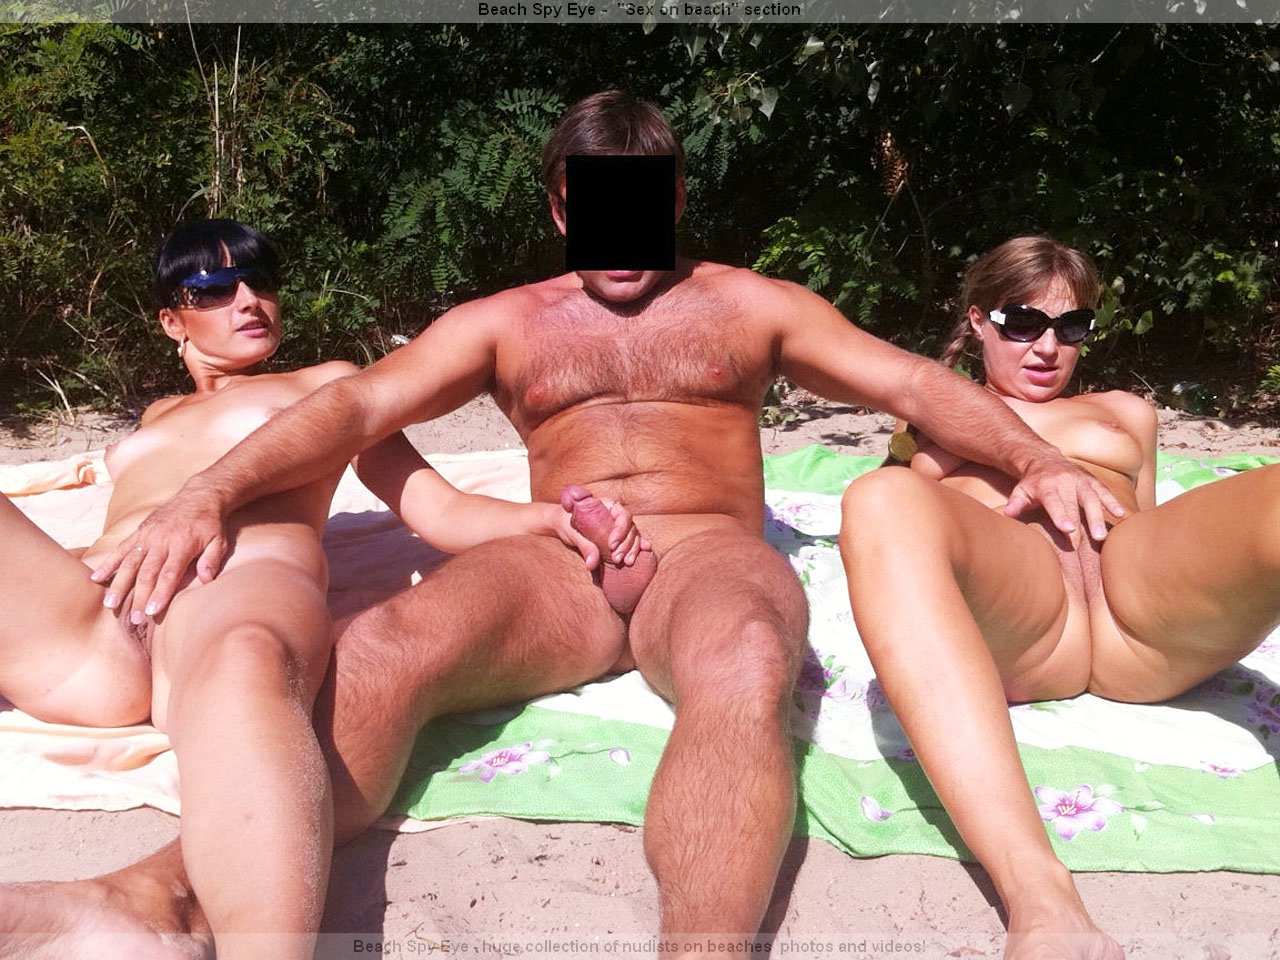 https://pbs.bulkjerk.com/39/3926/pictures/4027-2-voyeur-beach-sex.jpg